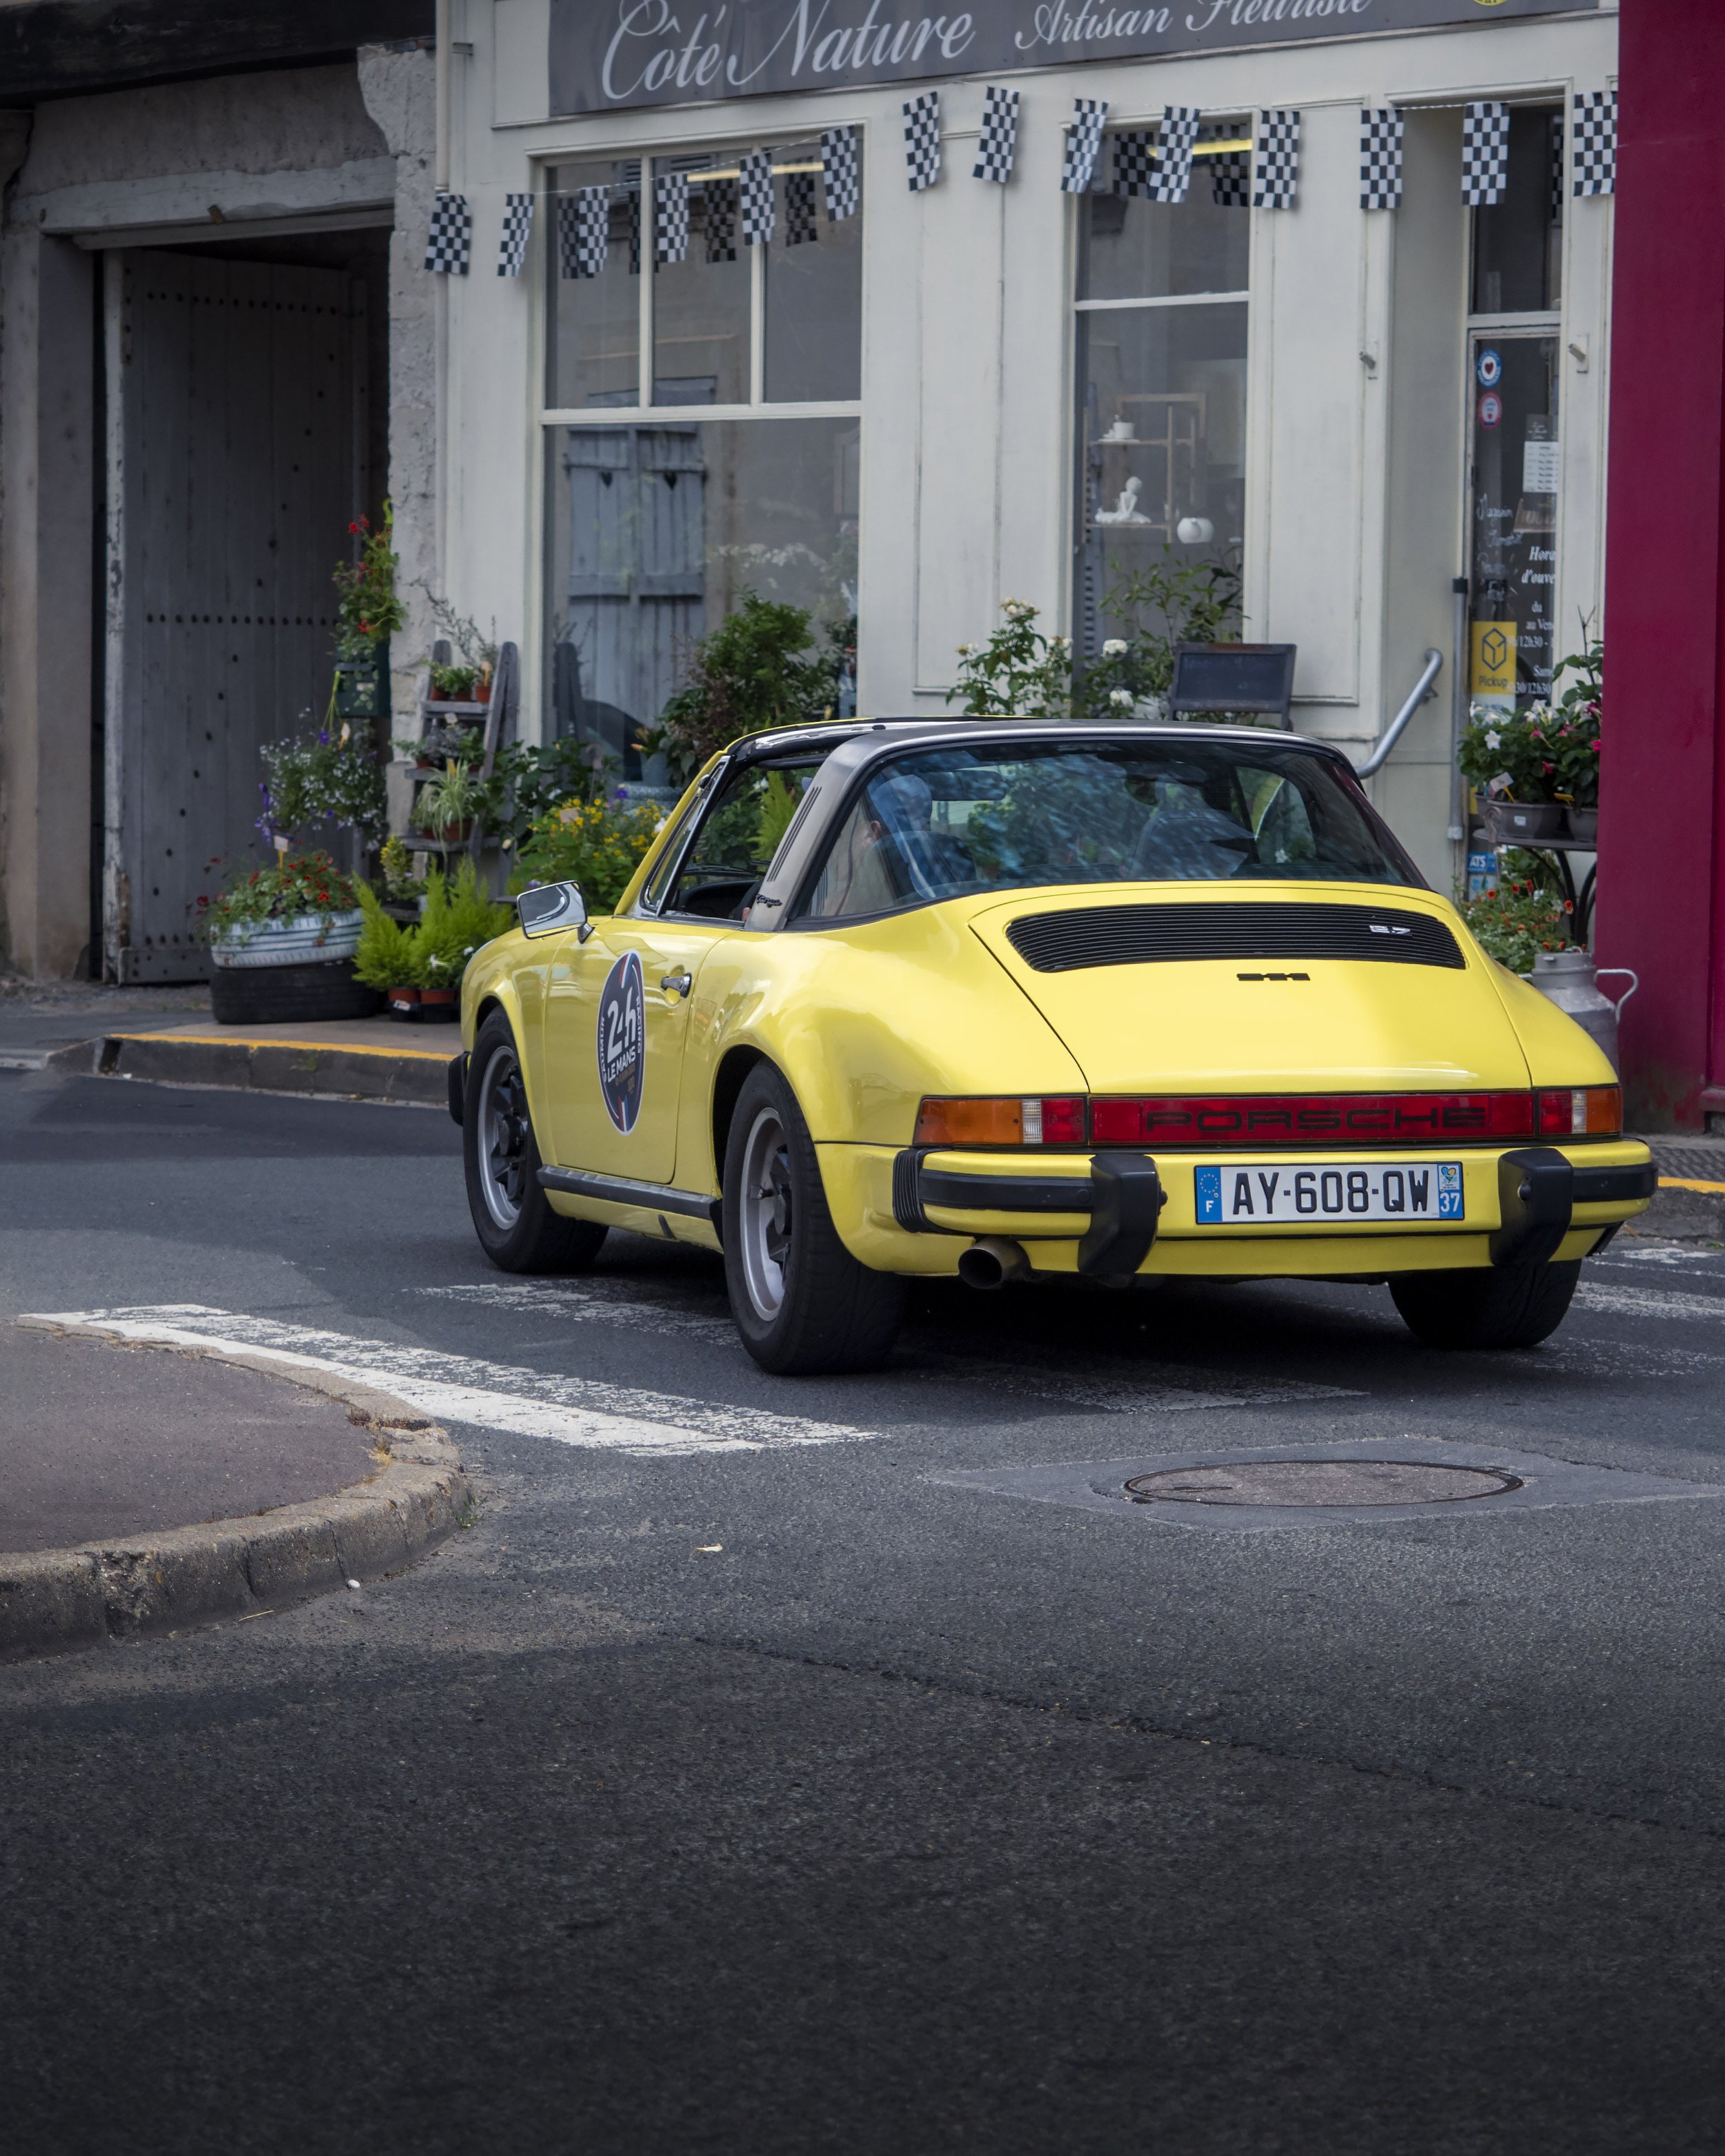 Porsche 911 Yellow Rear Angle 4x5.jpg